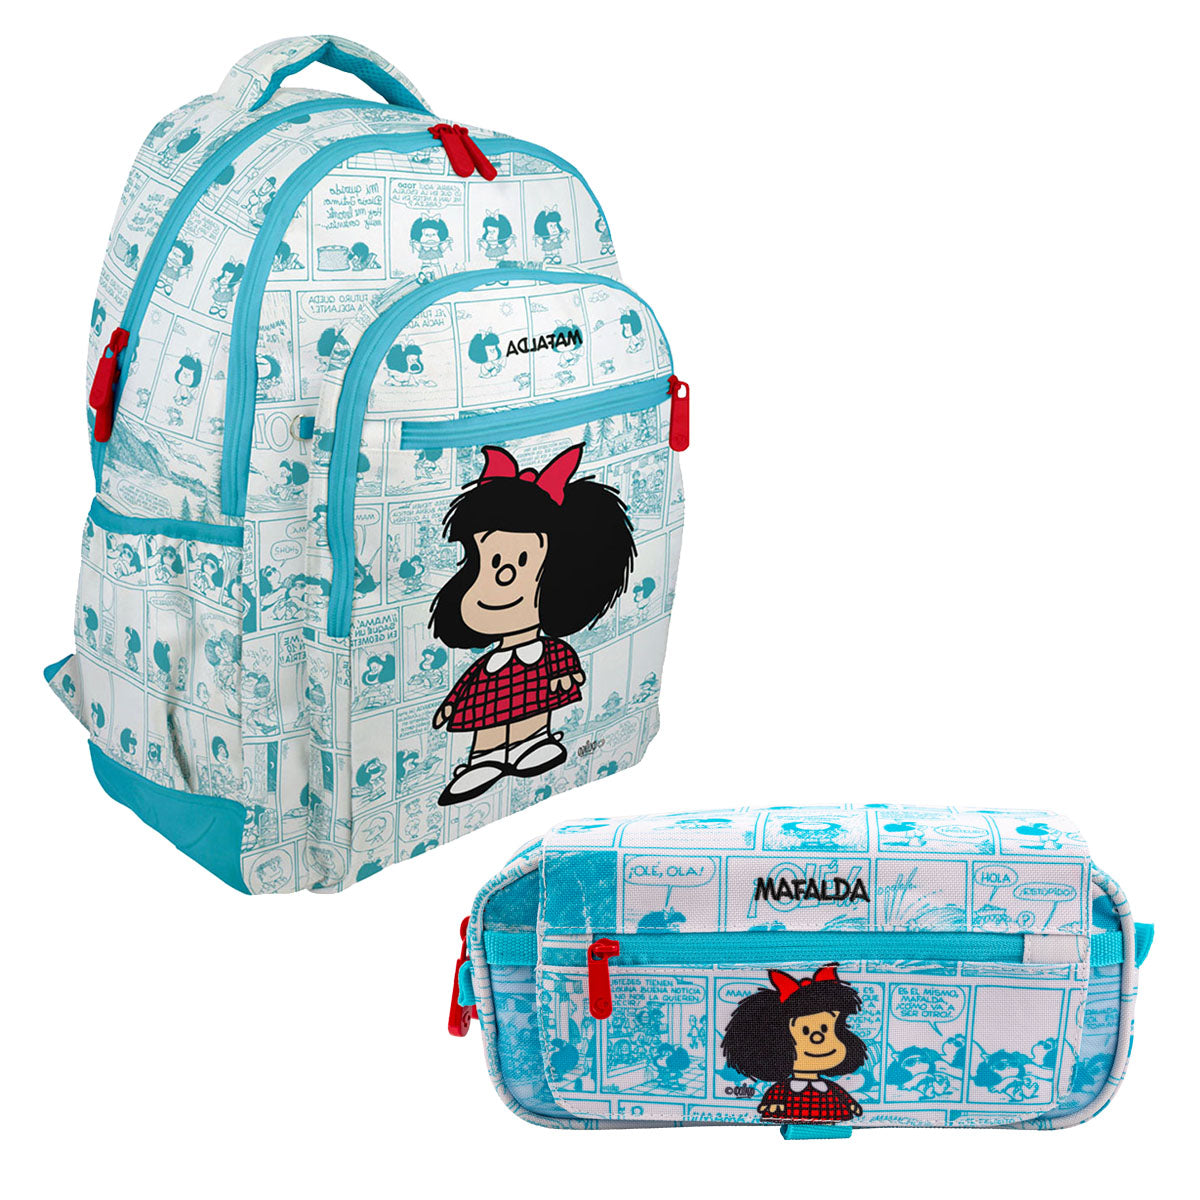 Grafoplás Mafalda - Pack Ahorro Escolar con Mochila y Estuche Triple a Juego. Viñetas